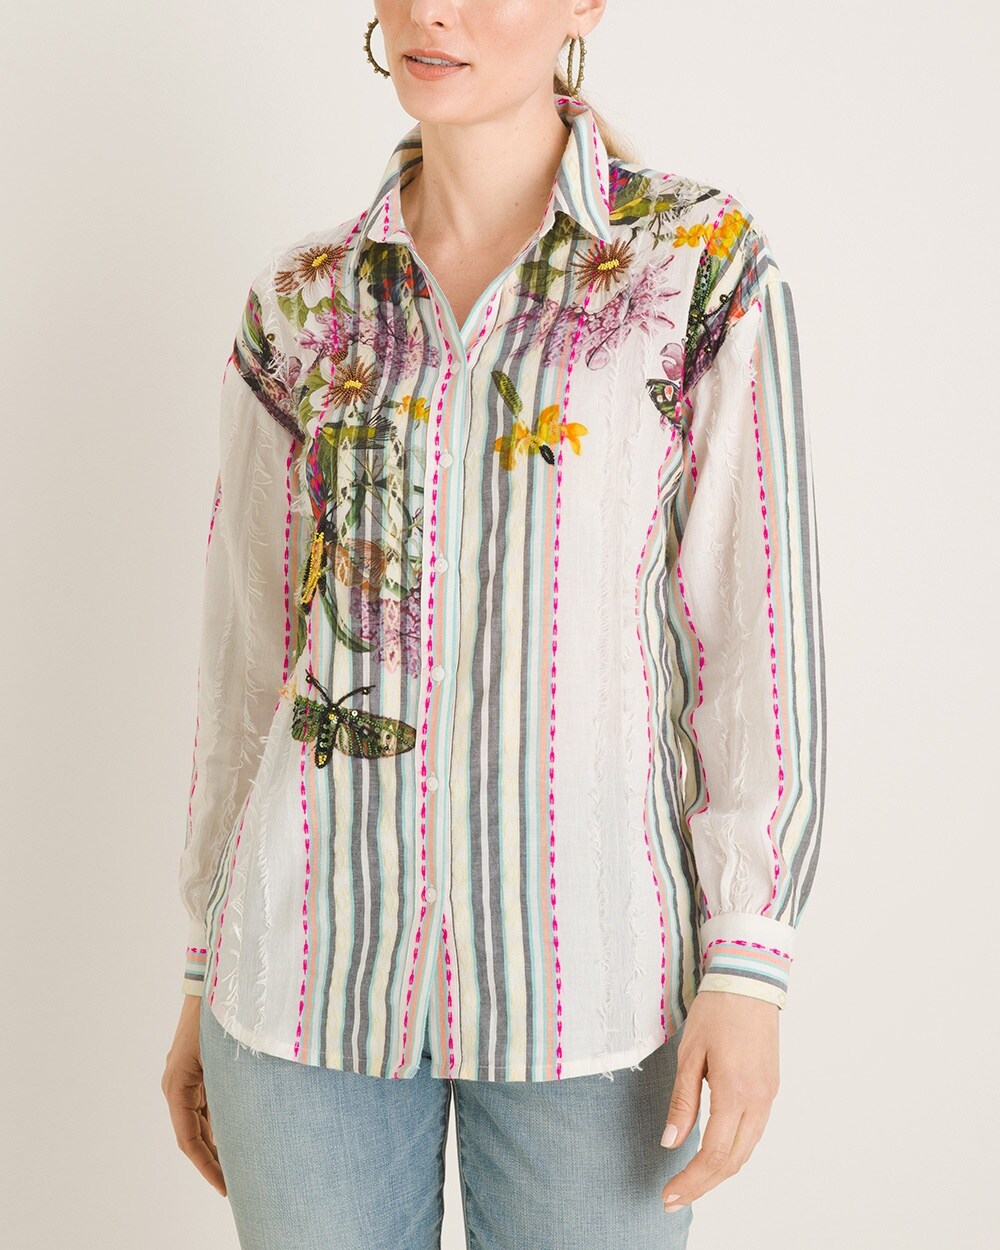 Embellished Floral Shirt